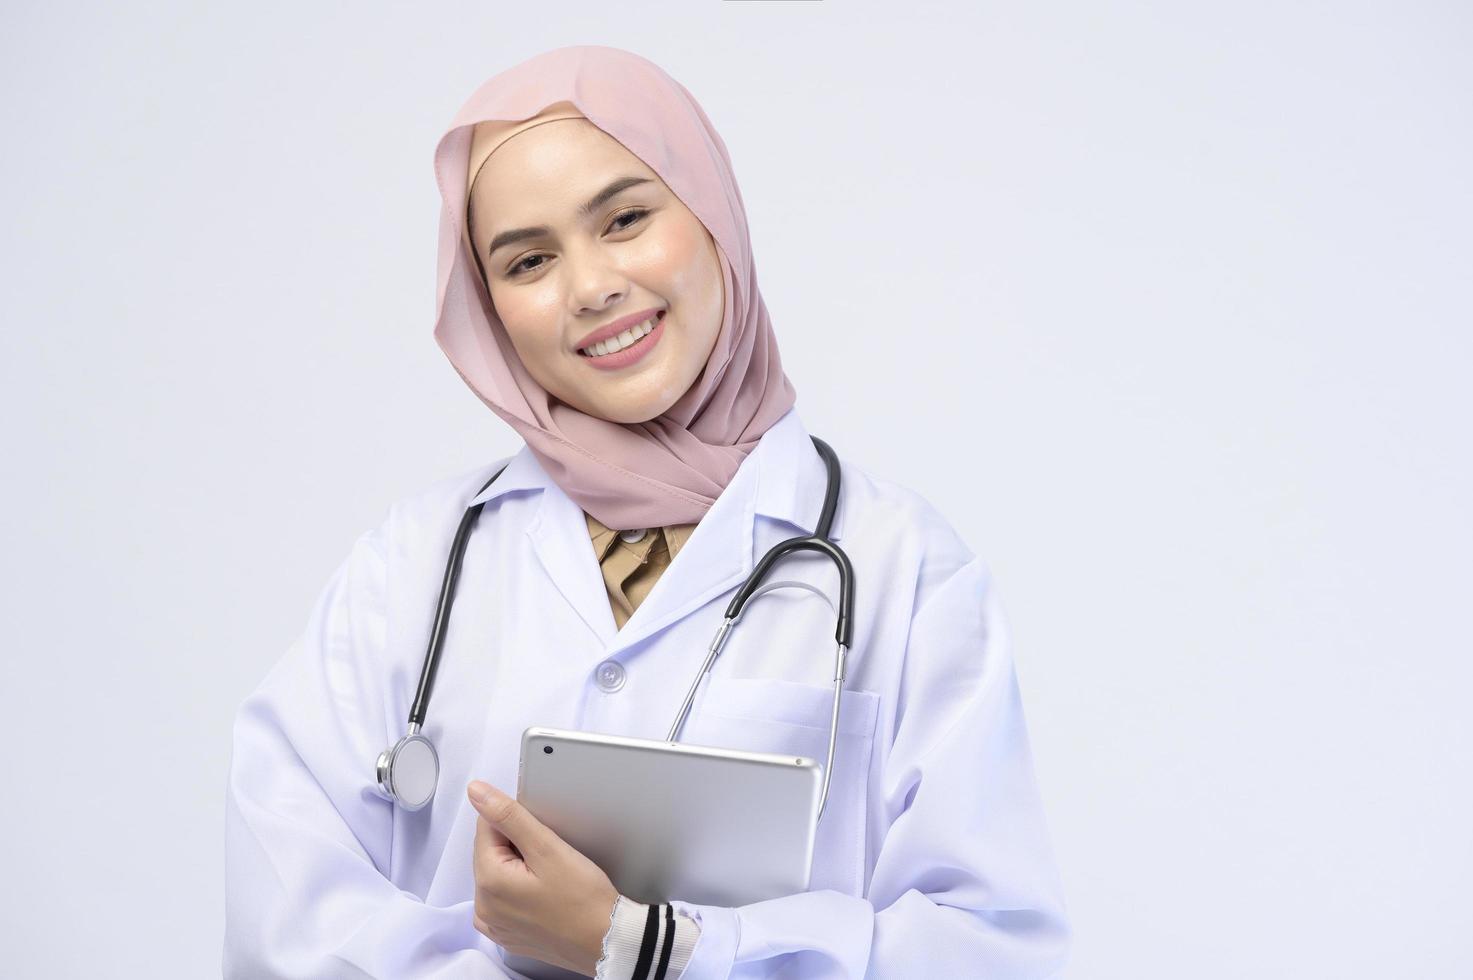 vrouwelijke moslim arts met hijab over witte achtergrond studio. foto